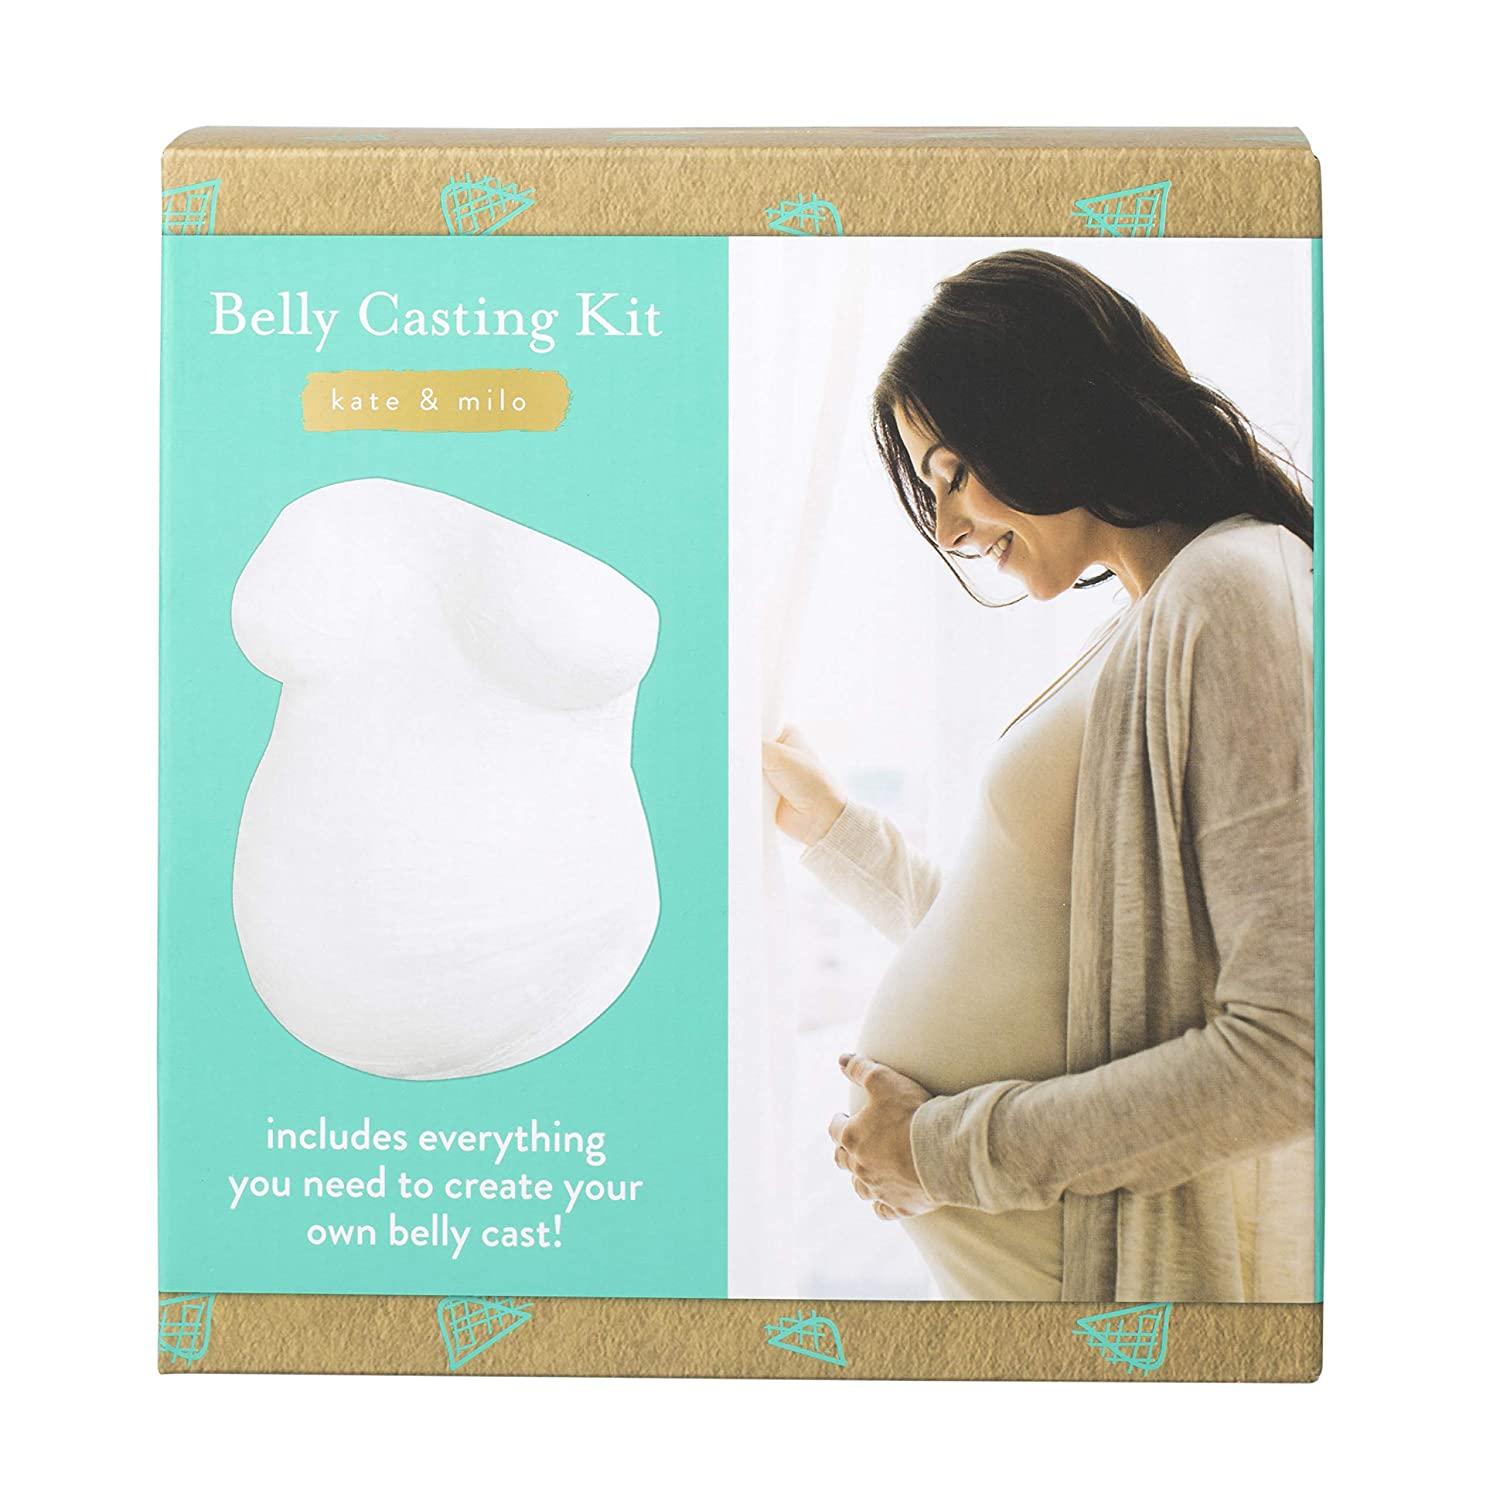 NEW Kate & Milo Belly Casting Kit Gender-Neutral Keepsake Baby Bump, White